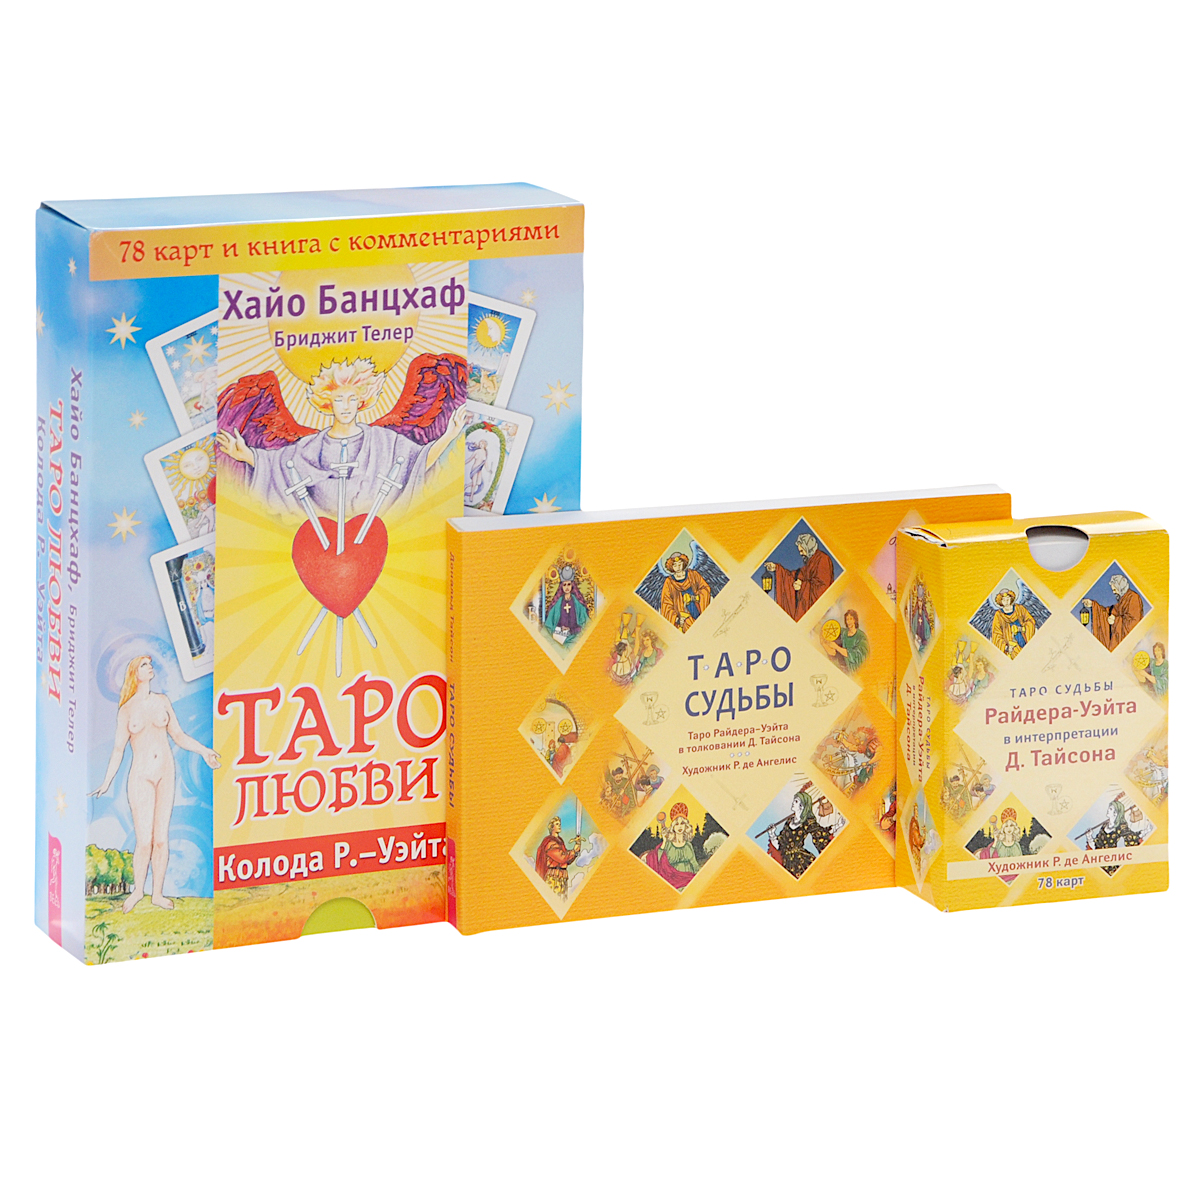 Таро любви (книга + набор из 78 карт). Таро судьбы. Таро судьбы (набор из 78 карт) (комплект)